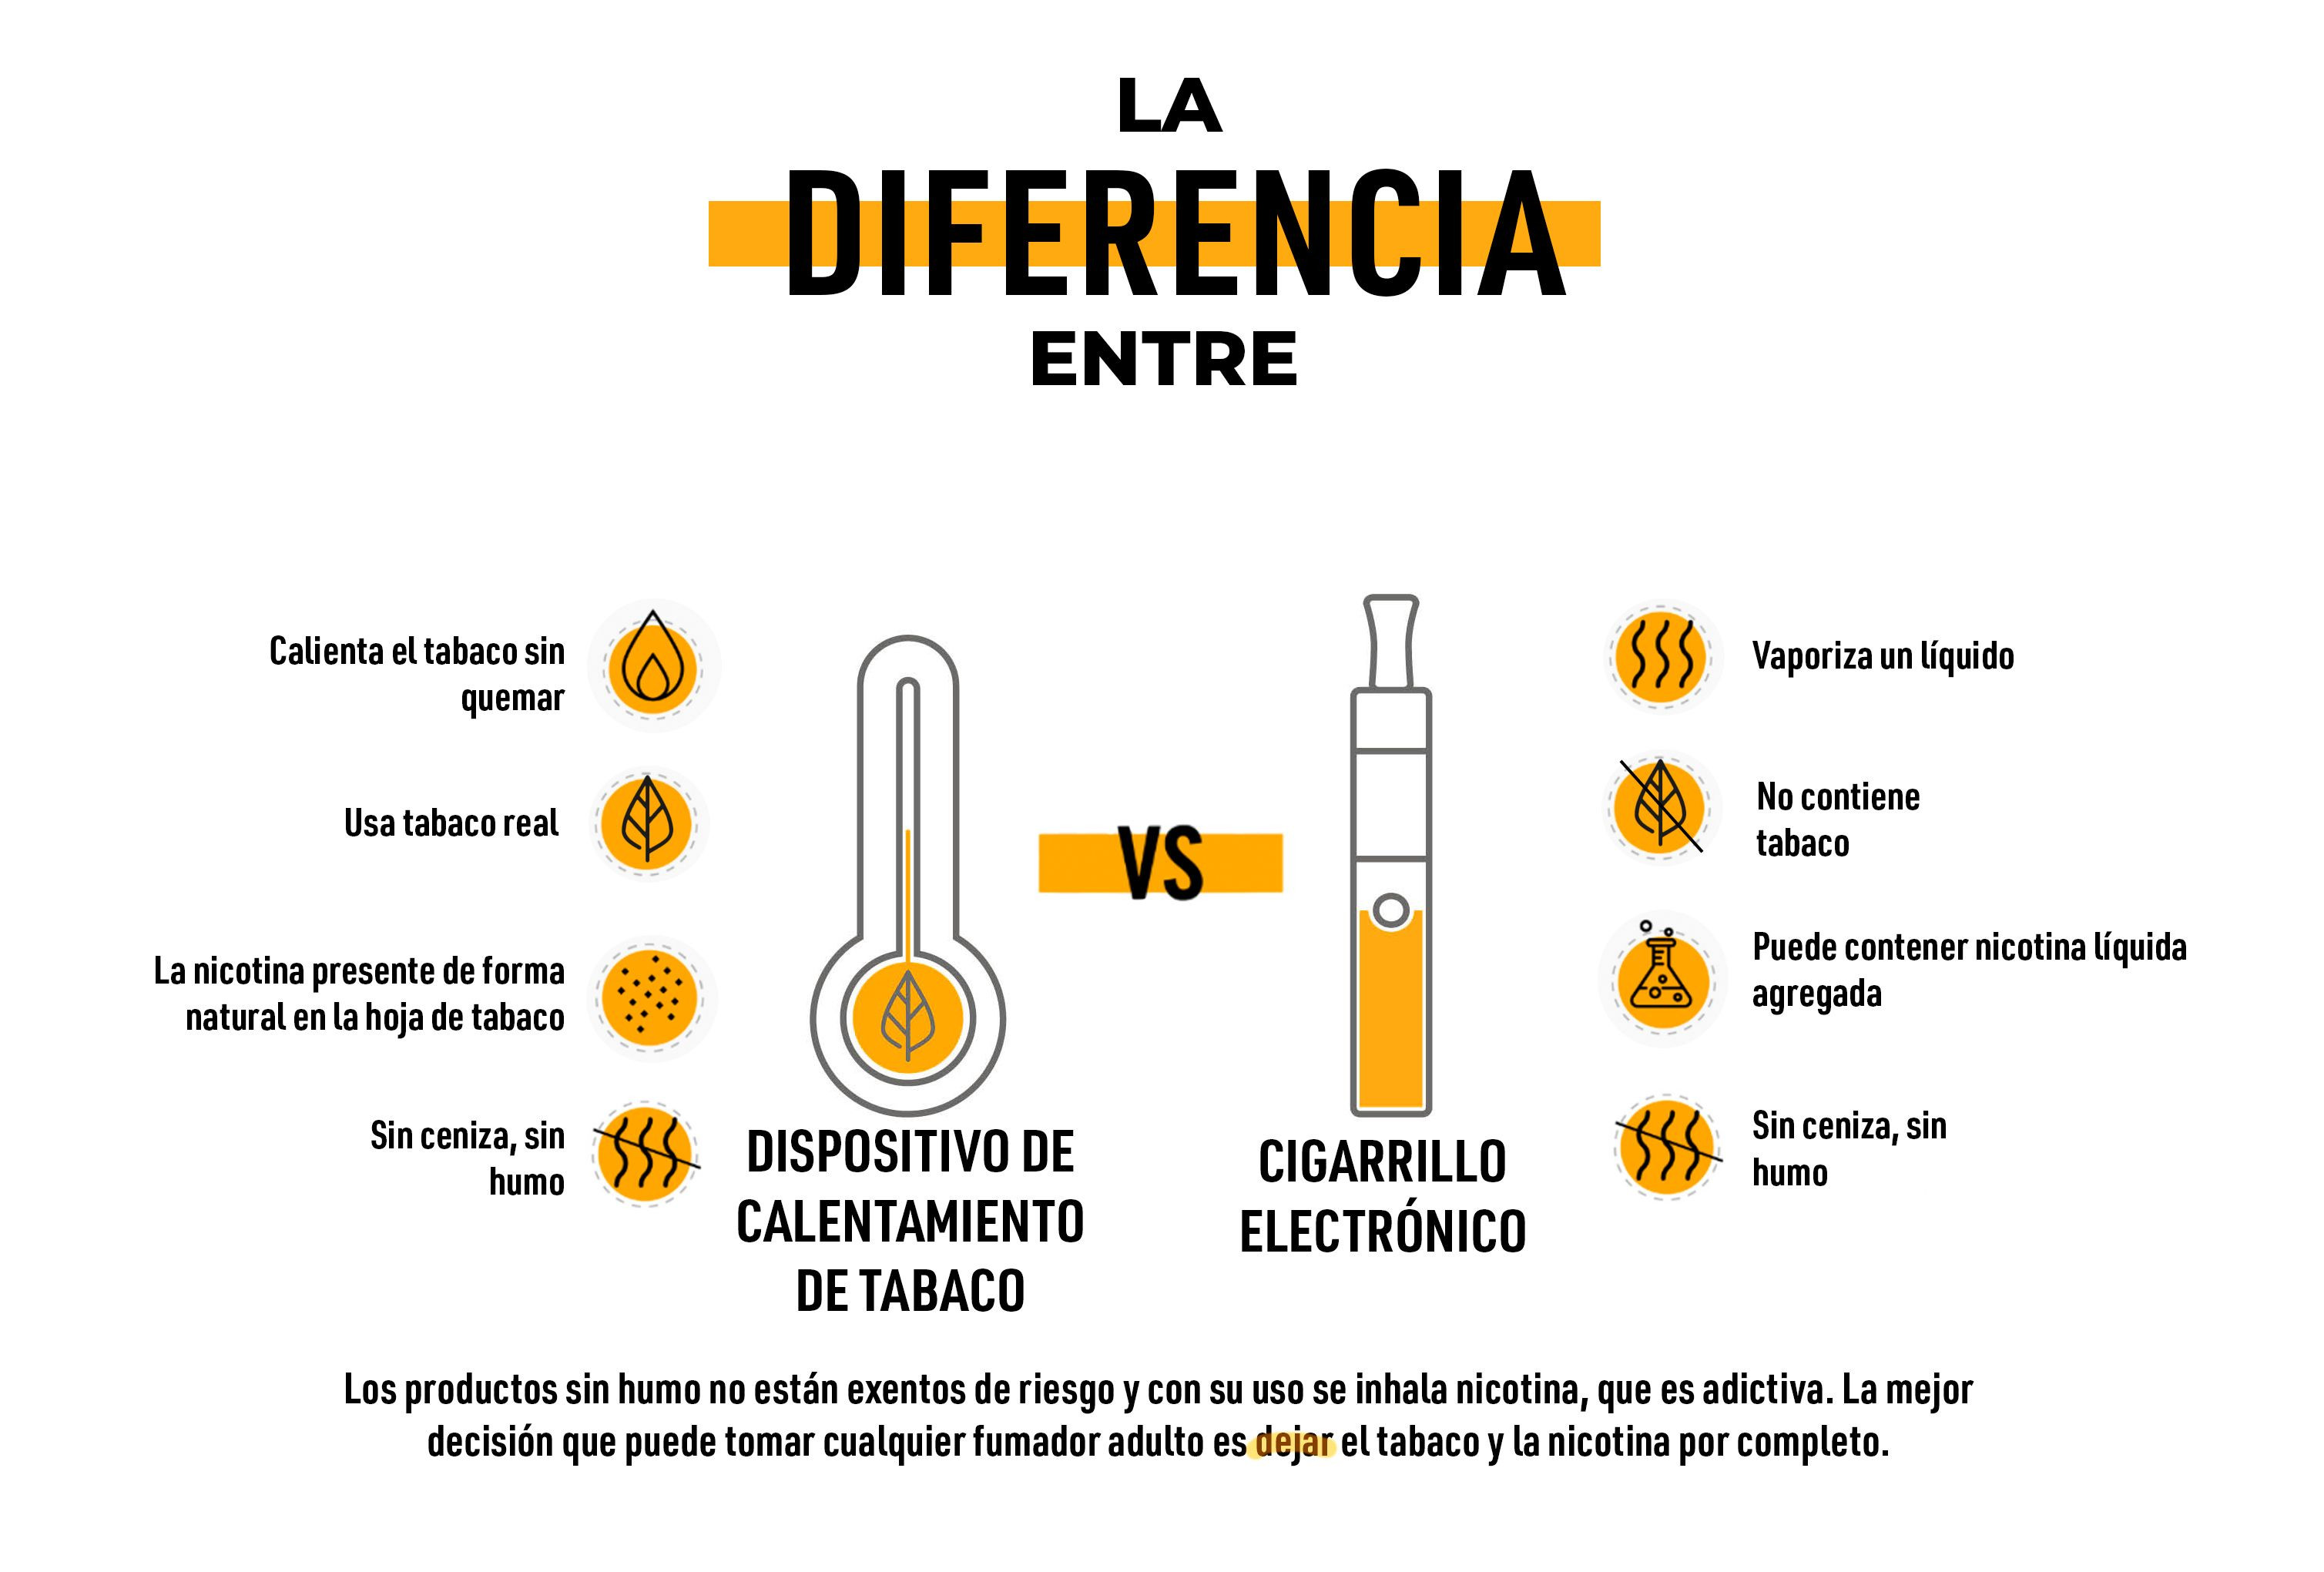 Infografía sobre la diferencia entre los dispositivos de calentamiento de tabaco y el cigarrillo electrónico / PHILIP MORRIS 